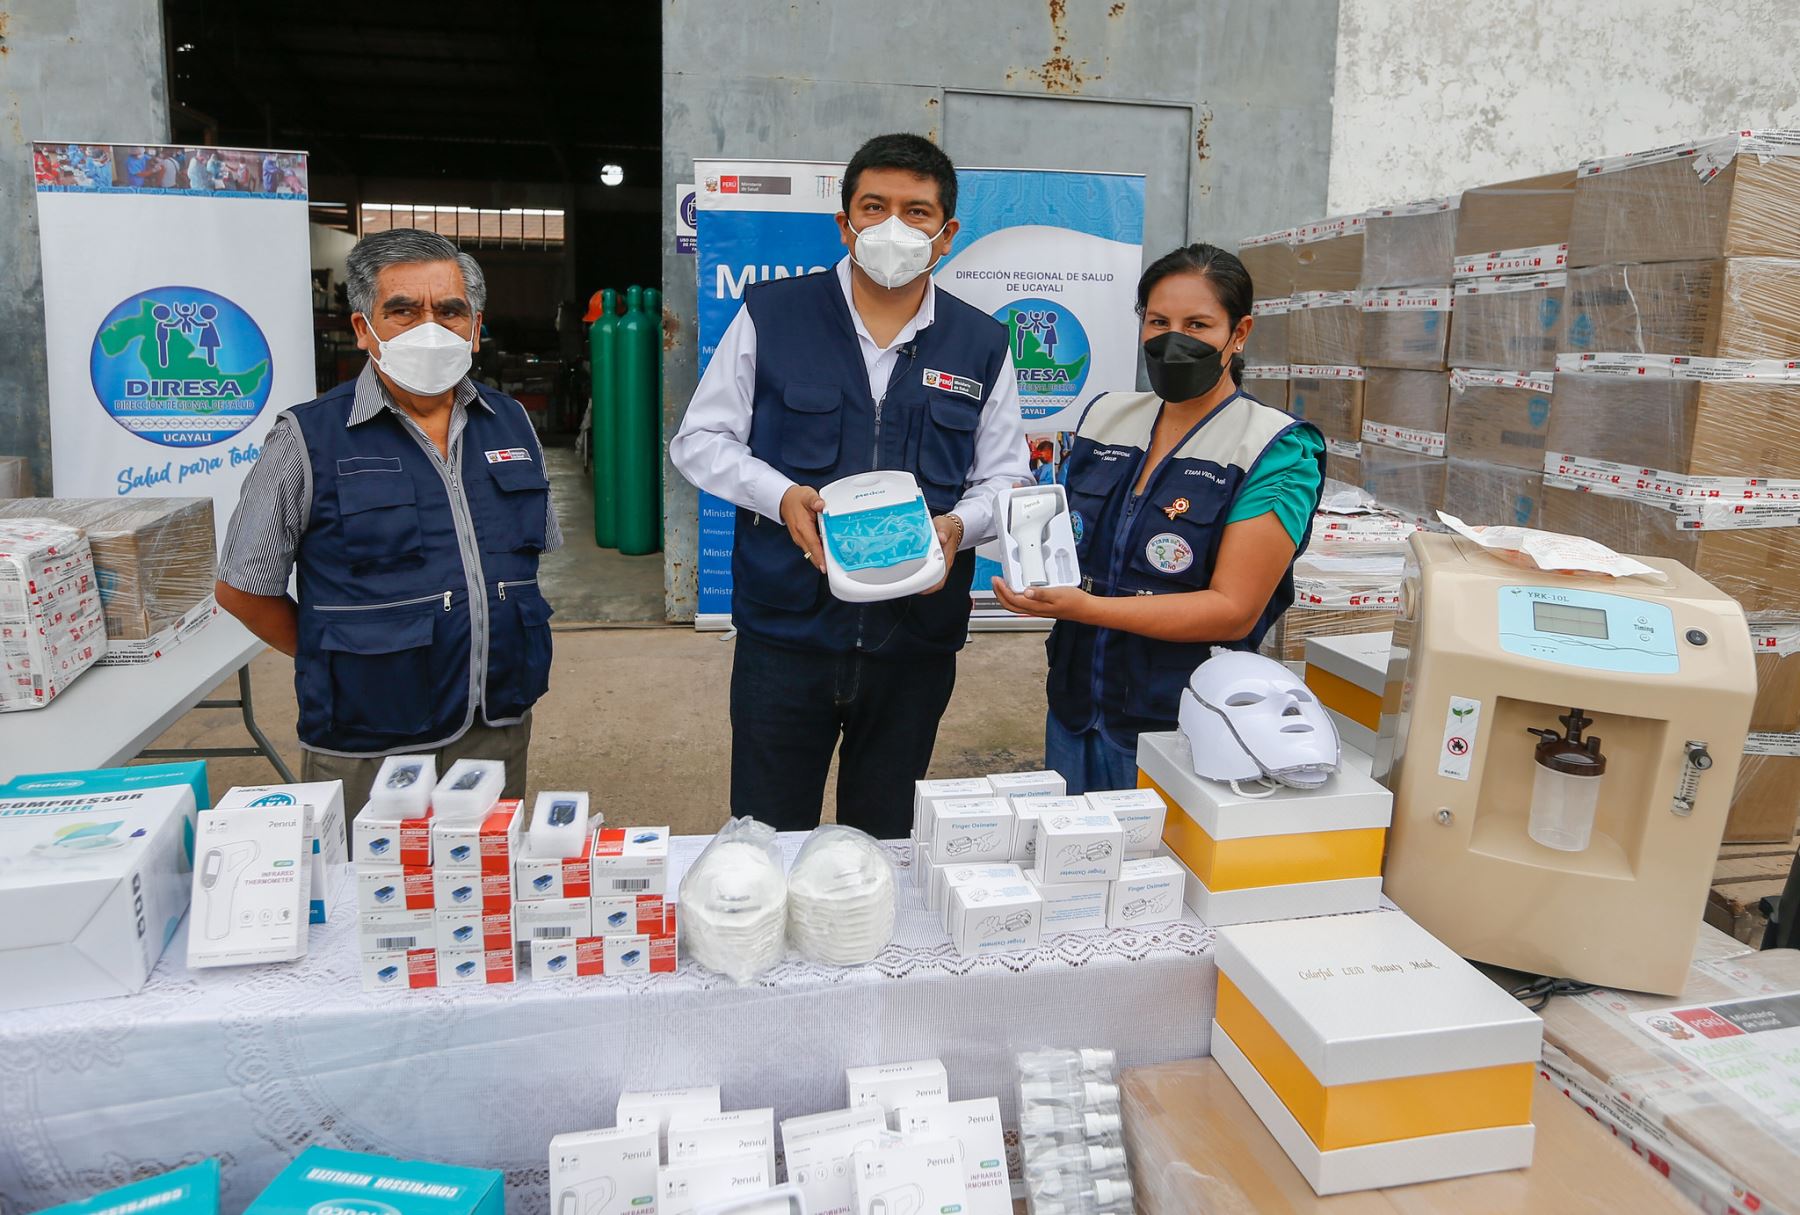 El Ministerio de Salud entregó 1.2 toneladas de equipos biomédicos a la Diresa Ucayali para fortalecer la atención de salud en esa región ante la cuarta ola de covid-19. ANDINA/Difusión